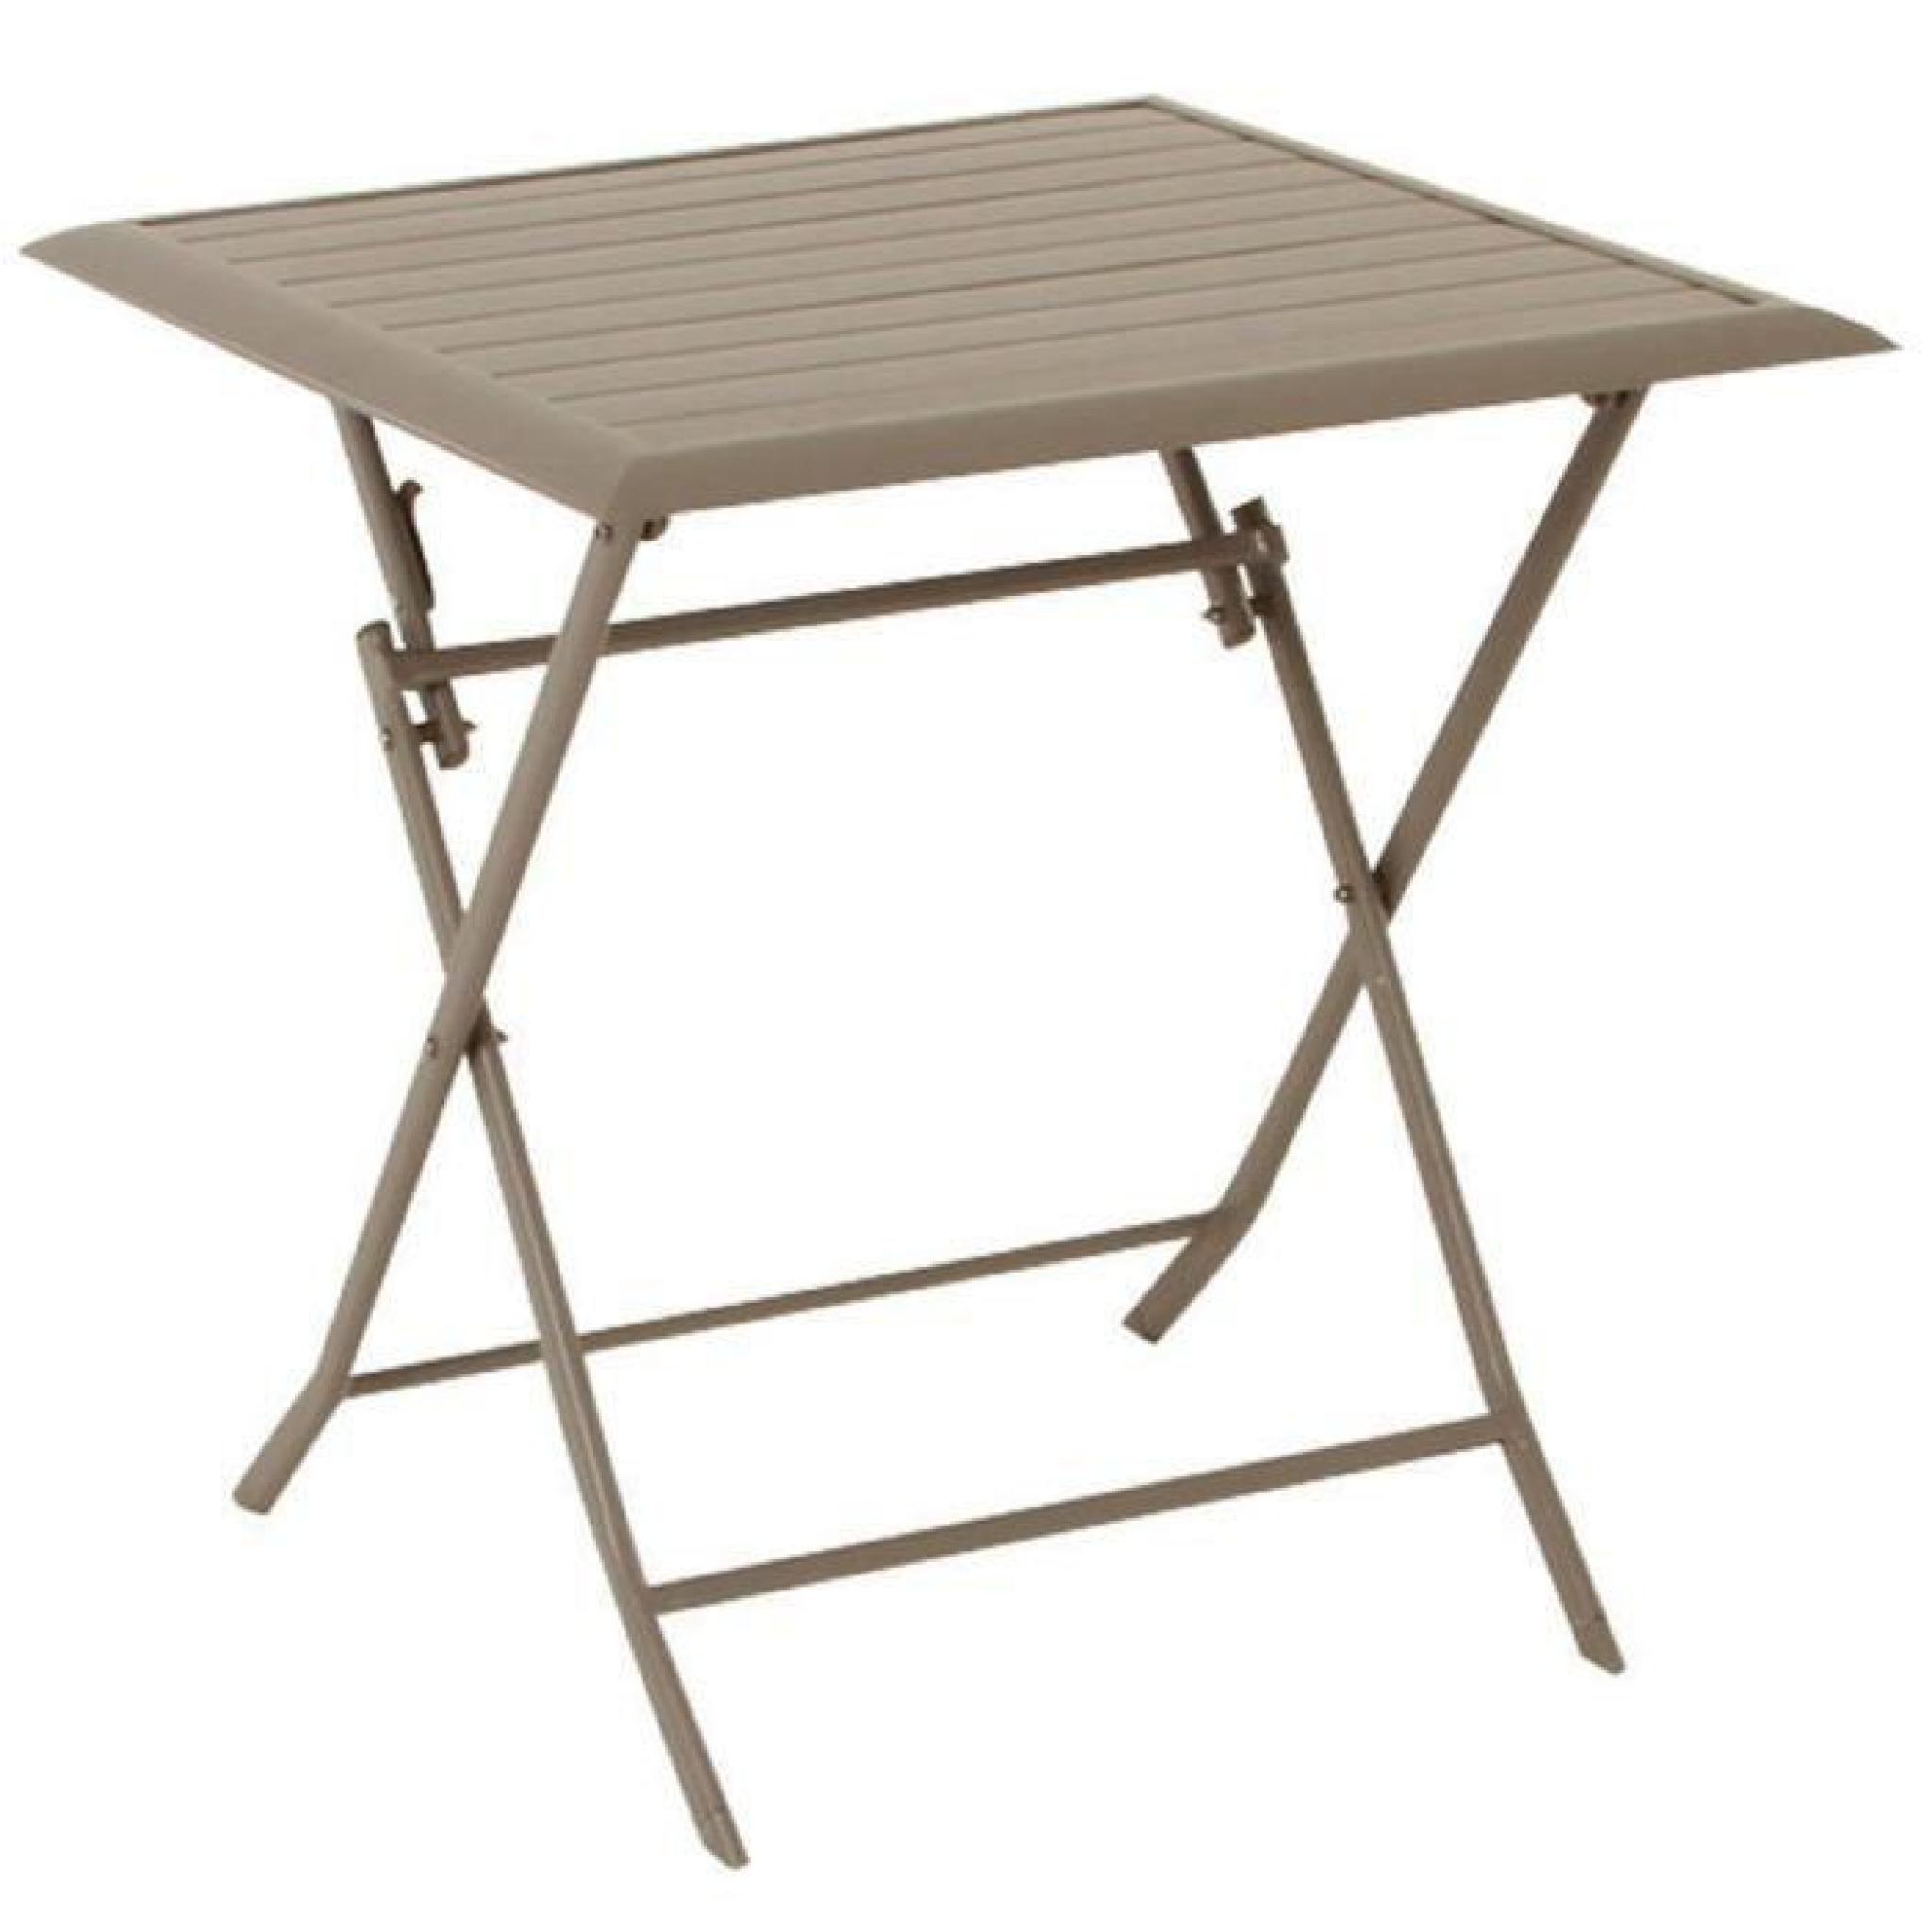 Table pliante carrée en Aluminium coloris taupe - Dim : L71cm x P71cm x H71cm 